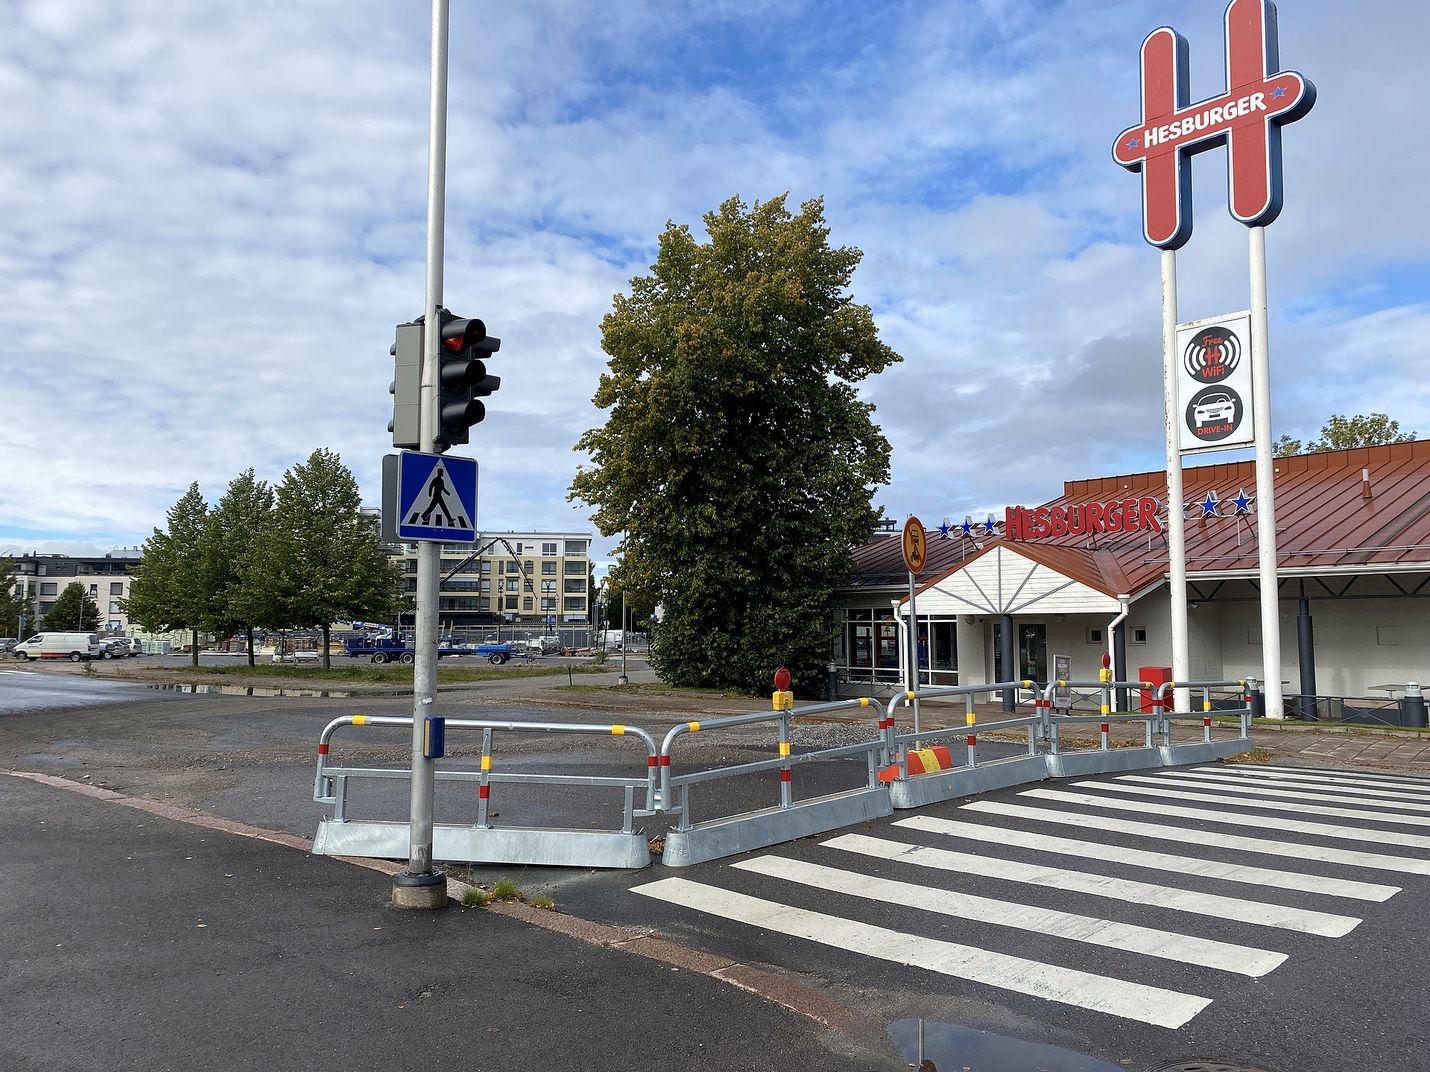 Kaupunki haluaisi sijoittaa uuden matkakeskuksen nykyisen Hesburgerin tontille. Nortamonkadun ja hampurilaisravintolan takaa kulkevan Pipanpolun rajaama paikka on aika ahdas, myöntää kaavoitusjohtaja Juha Eskolin.